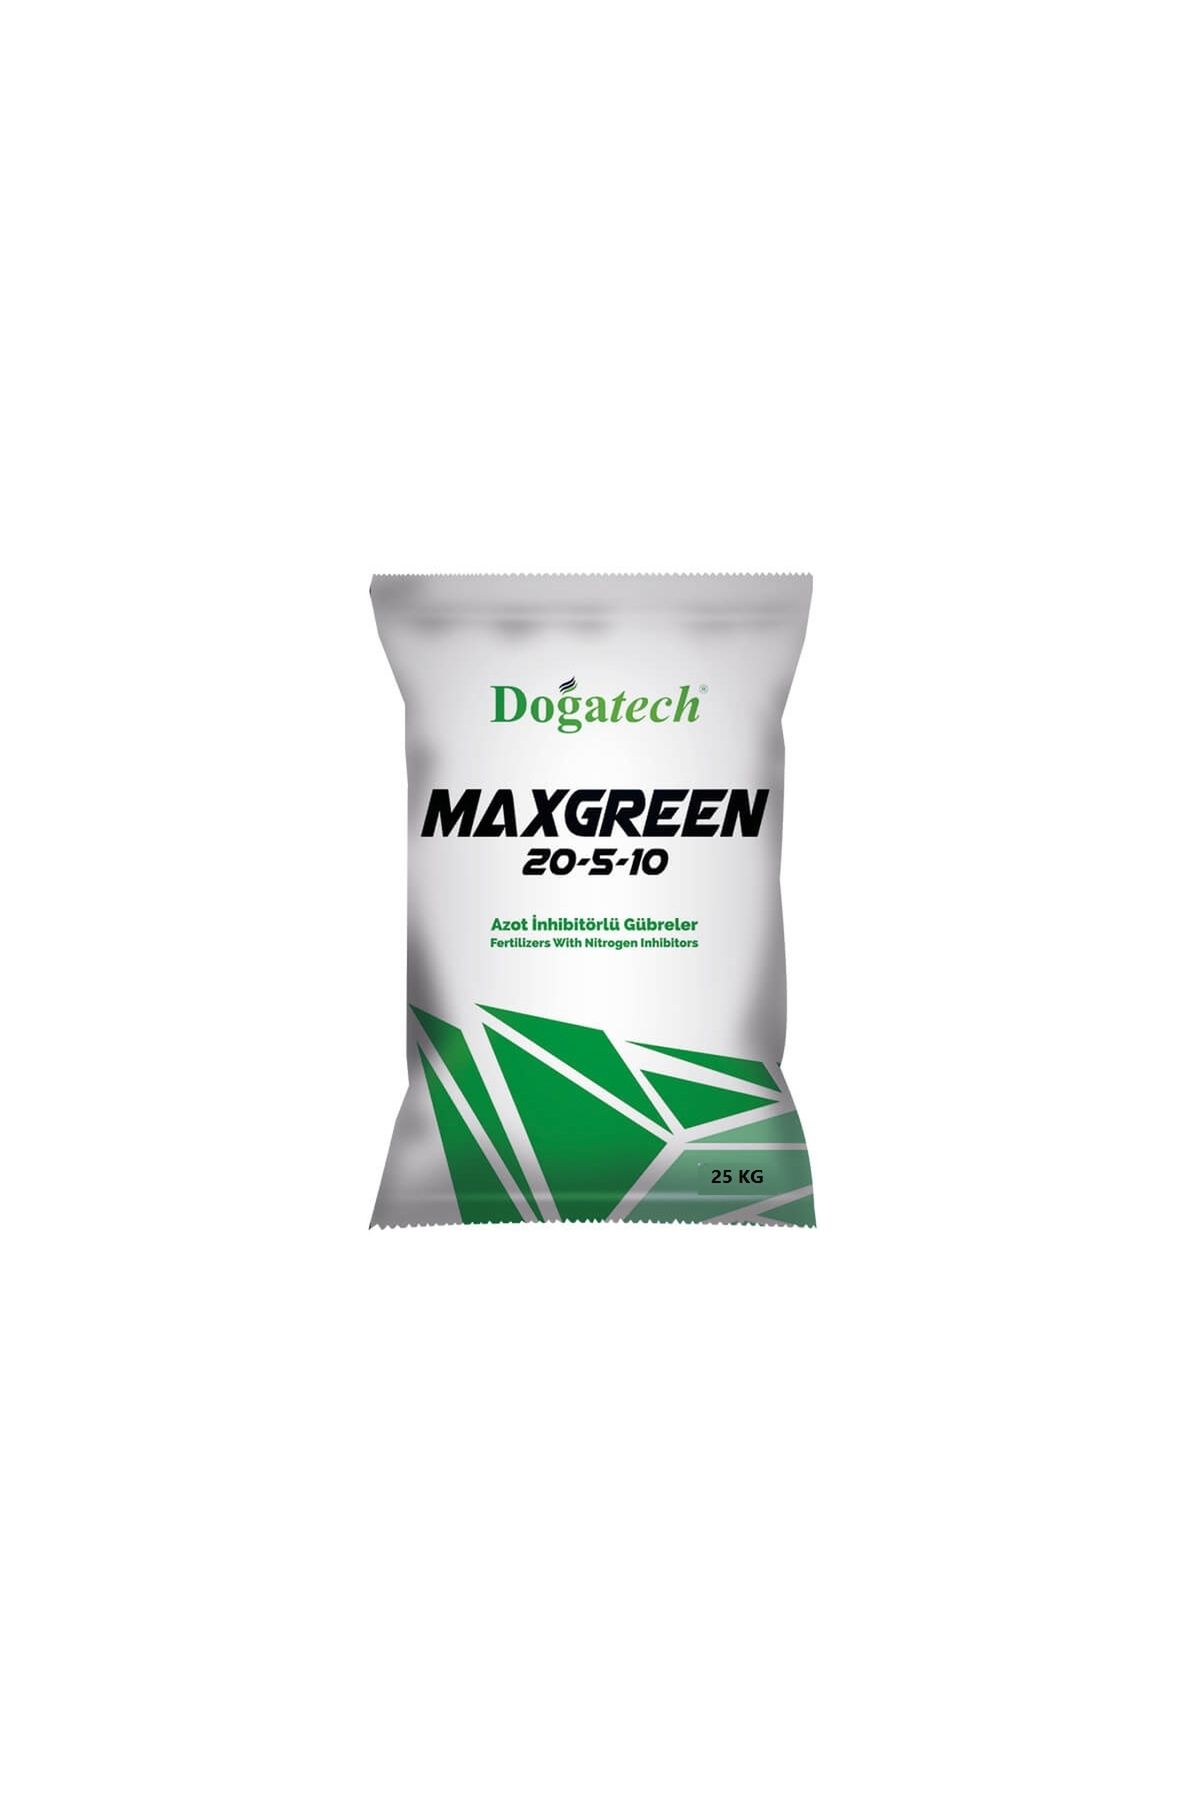 Doğatech Maxgreen 20-5-10 Granül Yavaş Salınımlı Çim ve Bitki Gübresi 25 KG